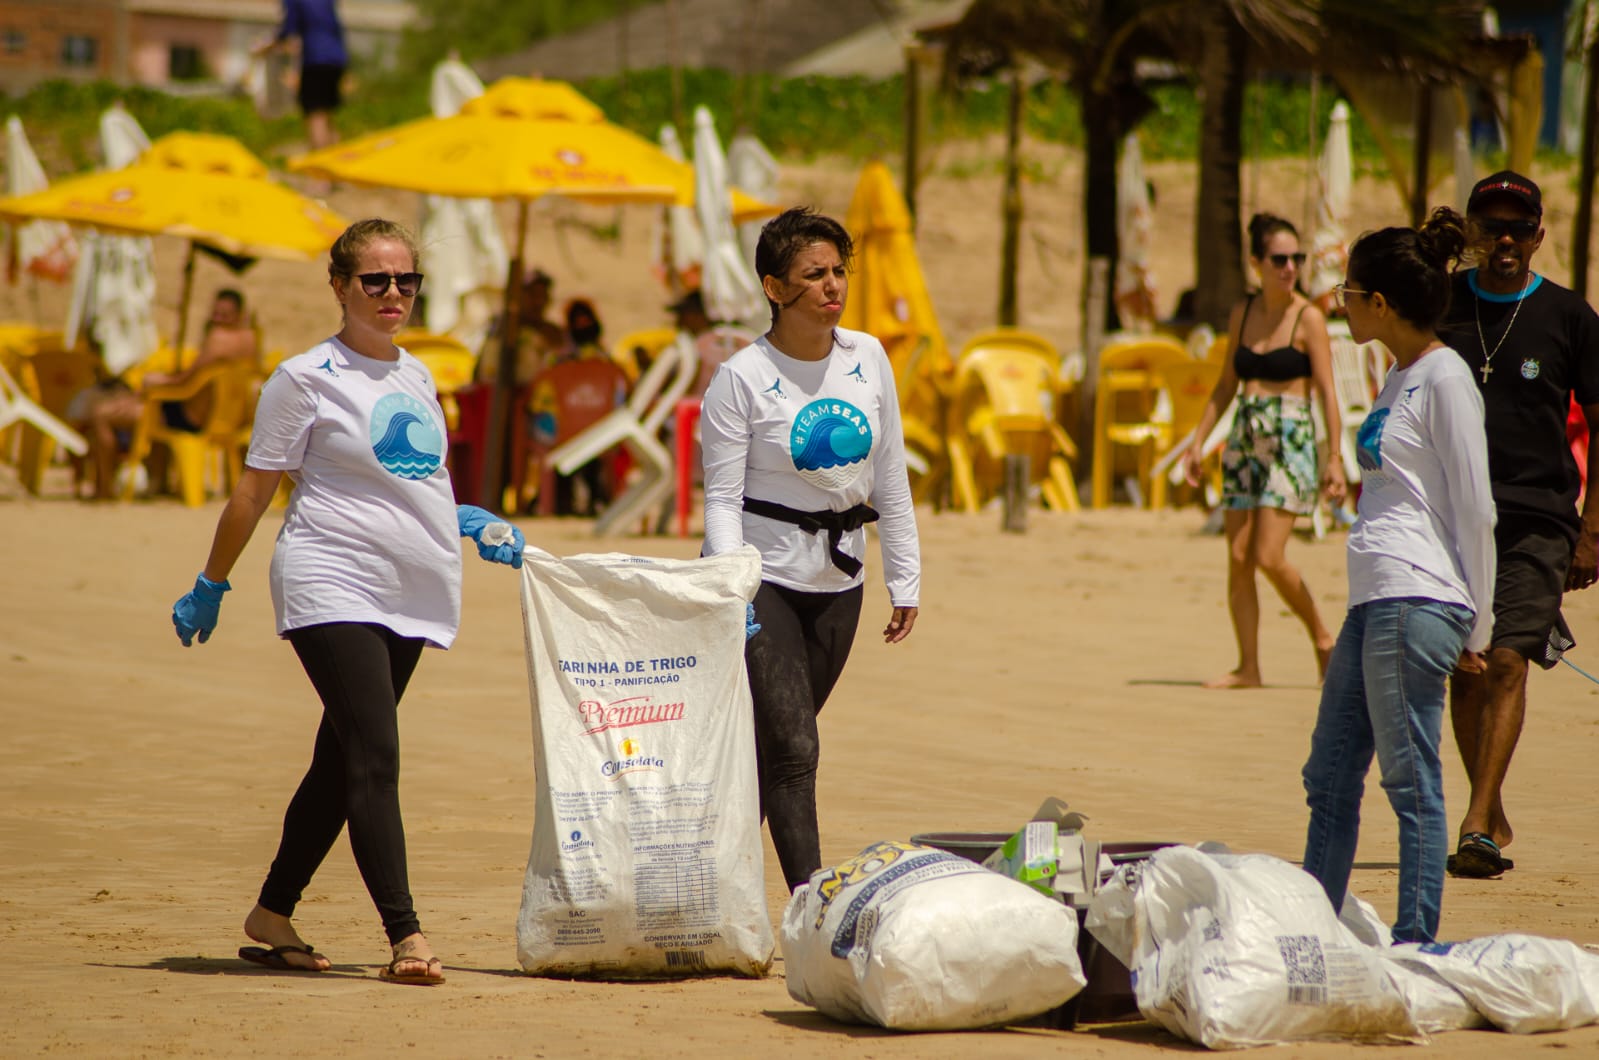 Decomposição dos resíduos - ação de limpeza de praias em Sergipe